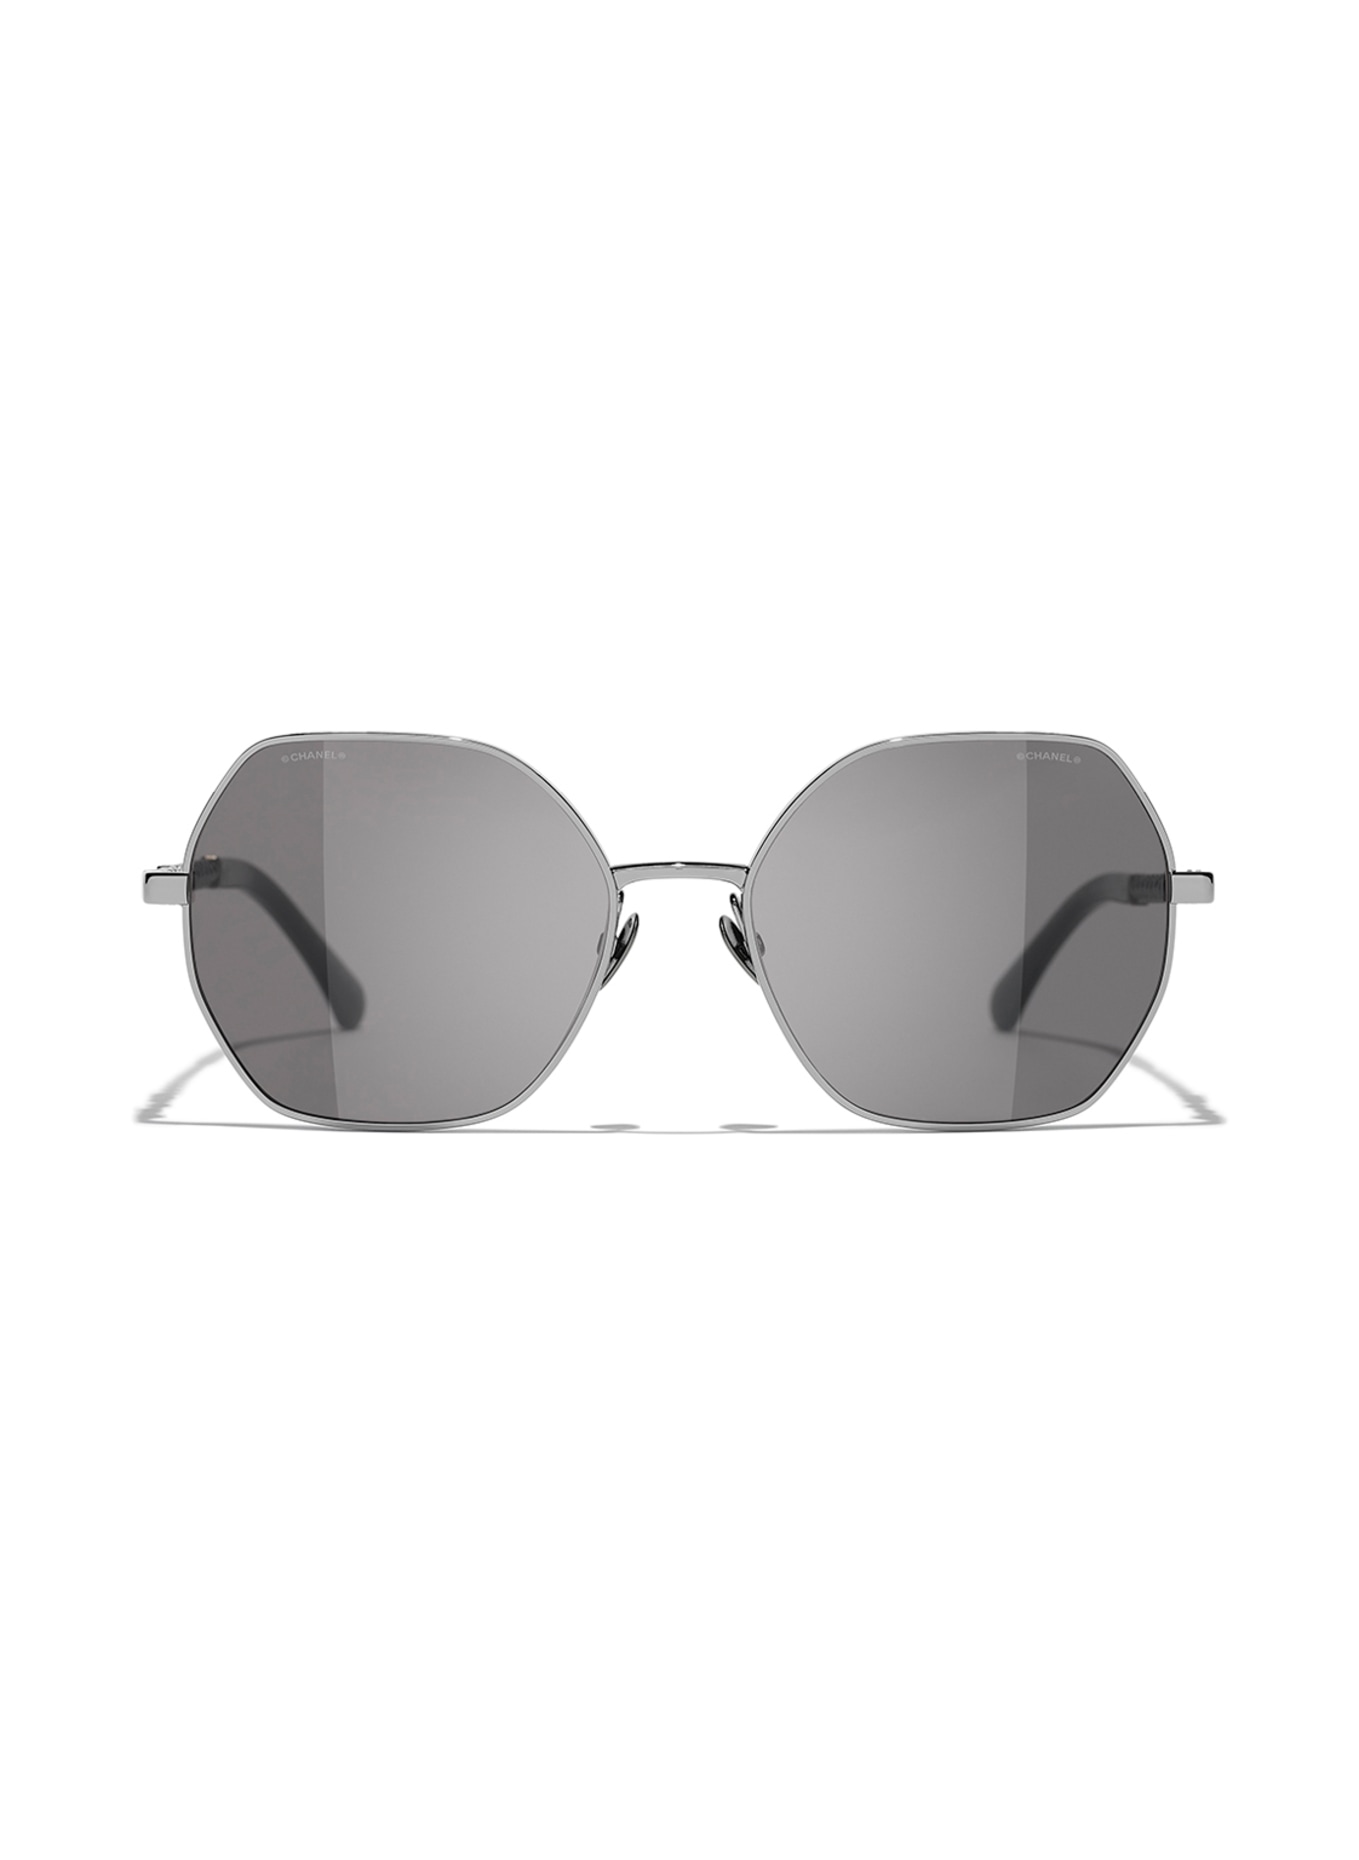 CHANEL Square sunglasses, Color: C10833 - GRAY/DARK GRAY (Image 2)